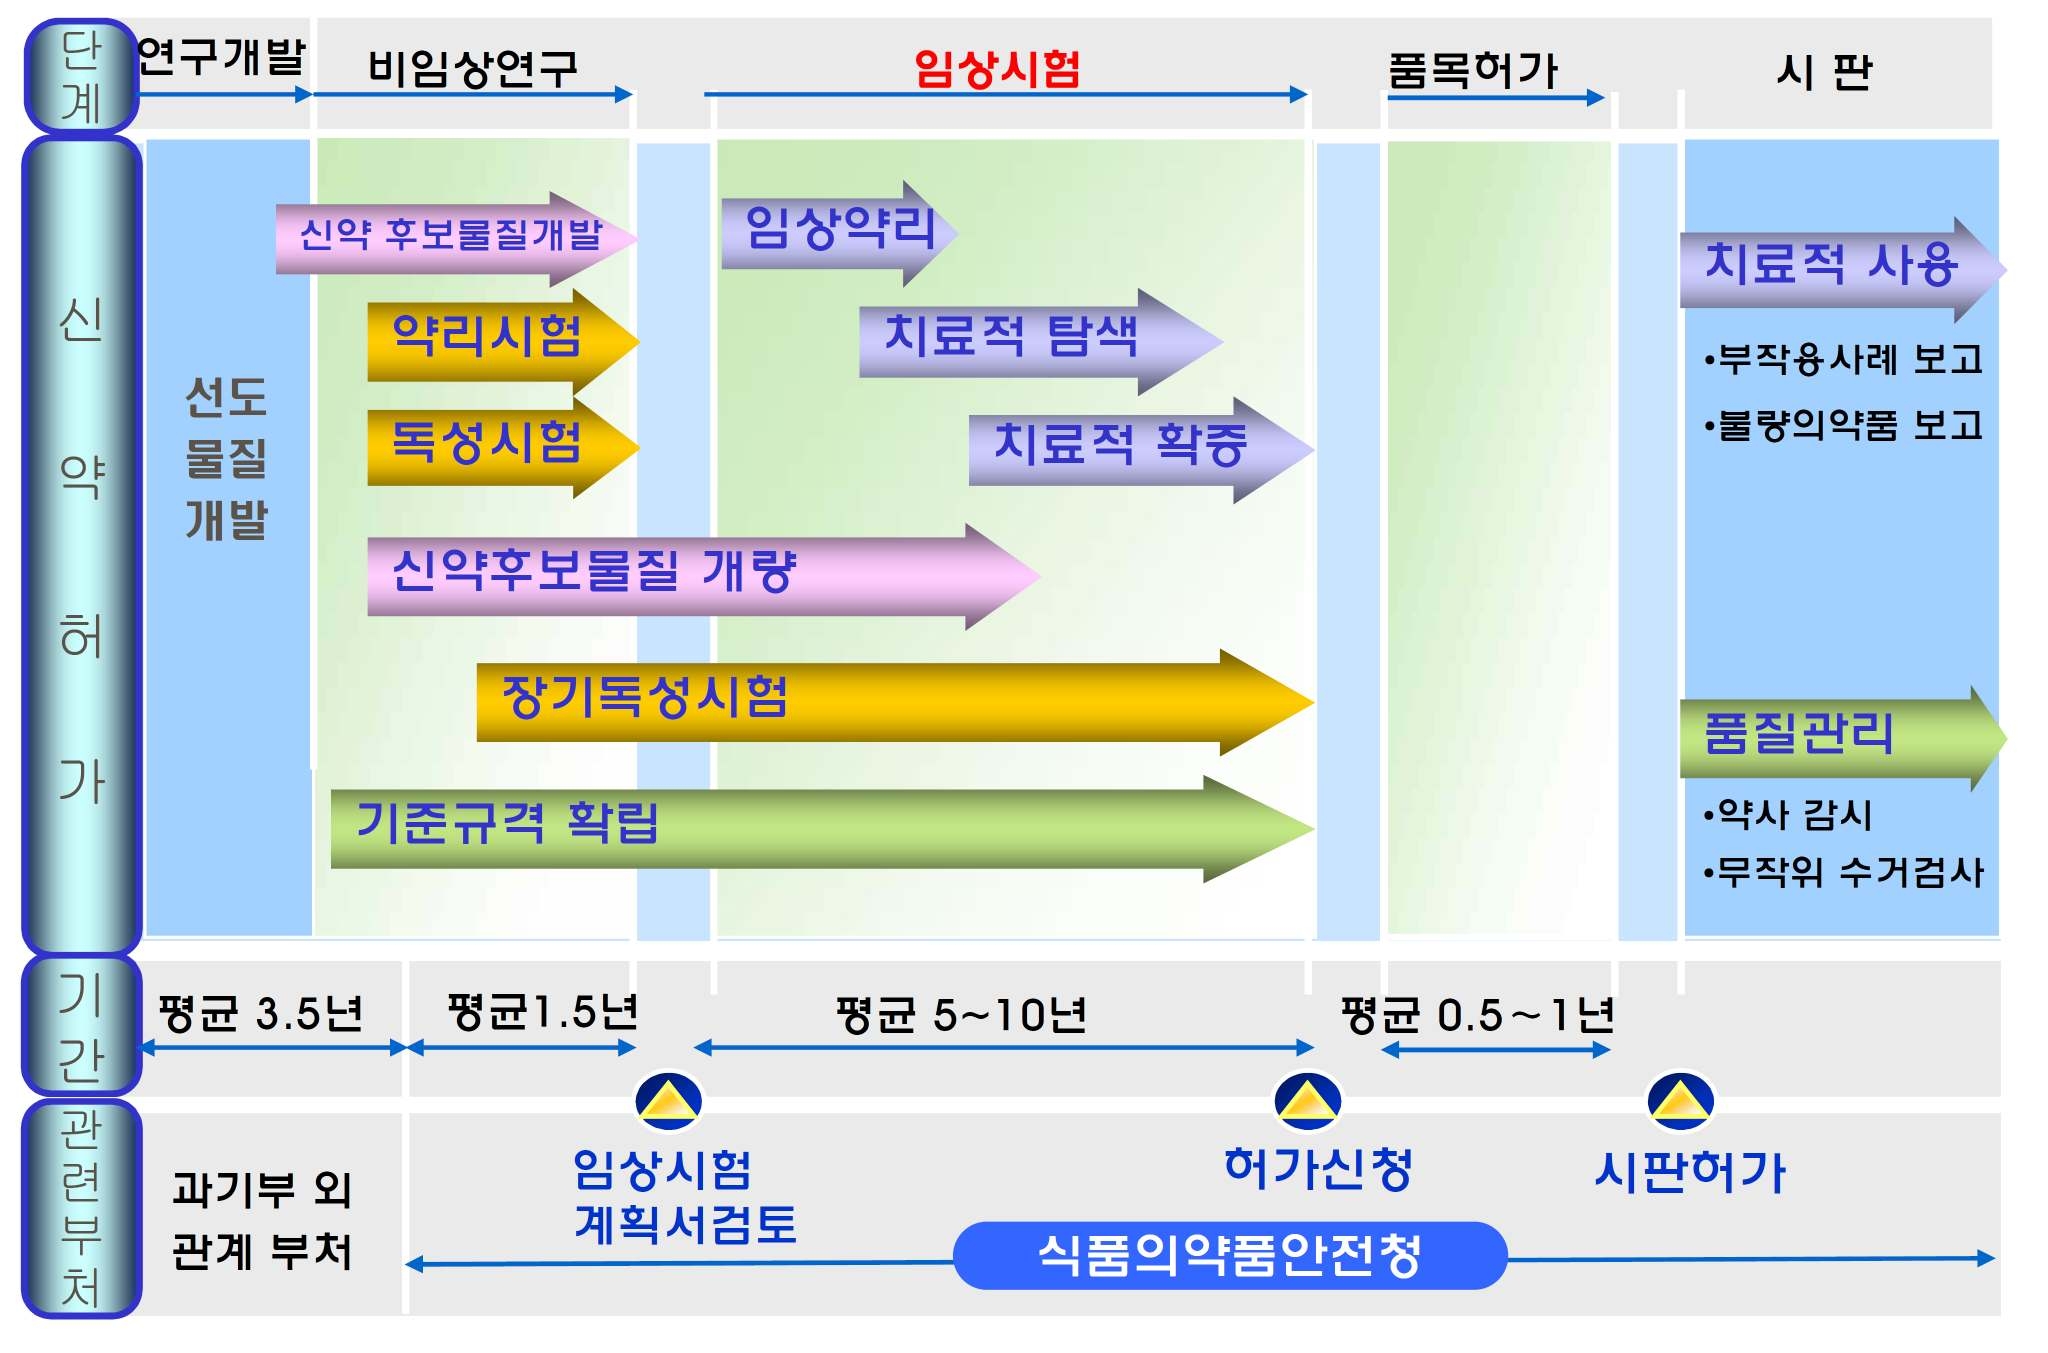 그림 2.8 천연물의약품 개발단계